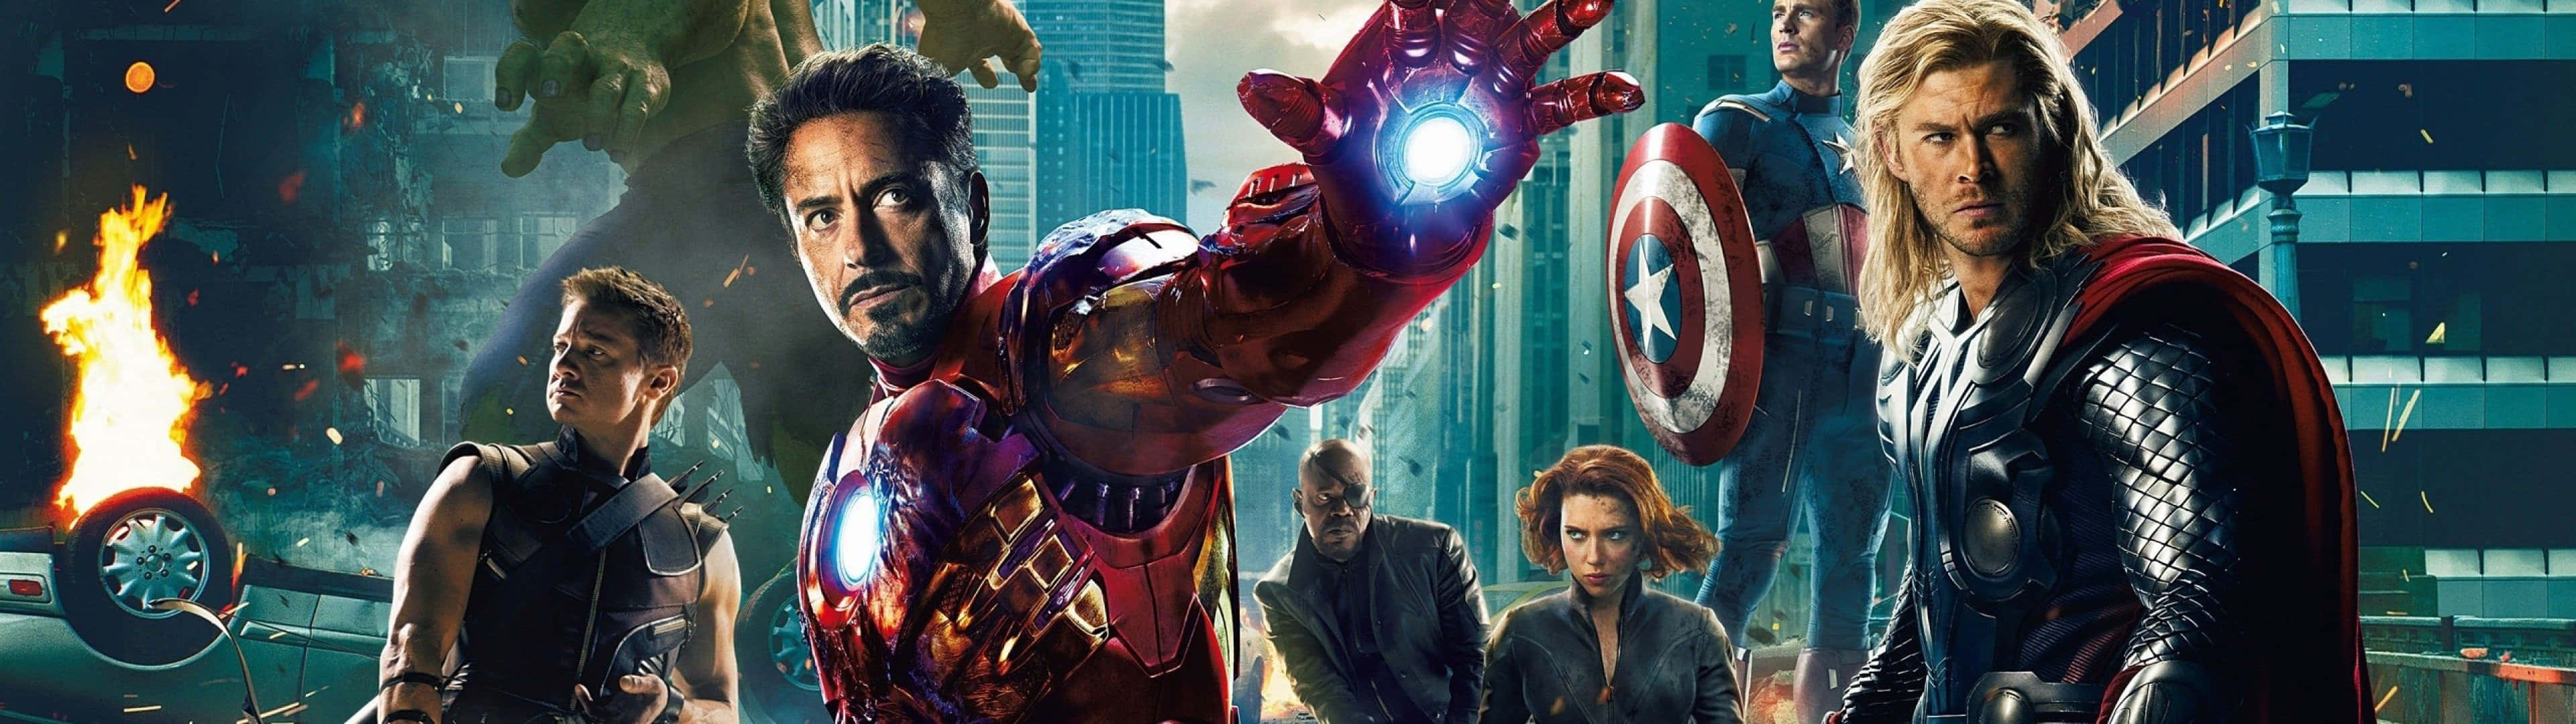 Gør dig klar til en episk actioneventyr med Marvels Avengers i dual screen mode. Wallpaper